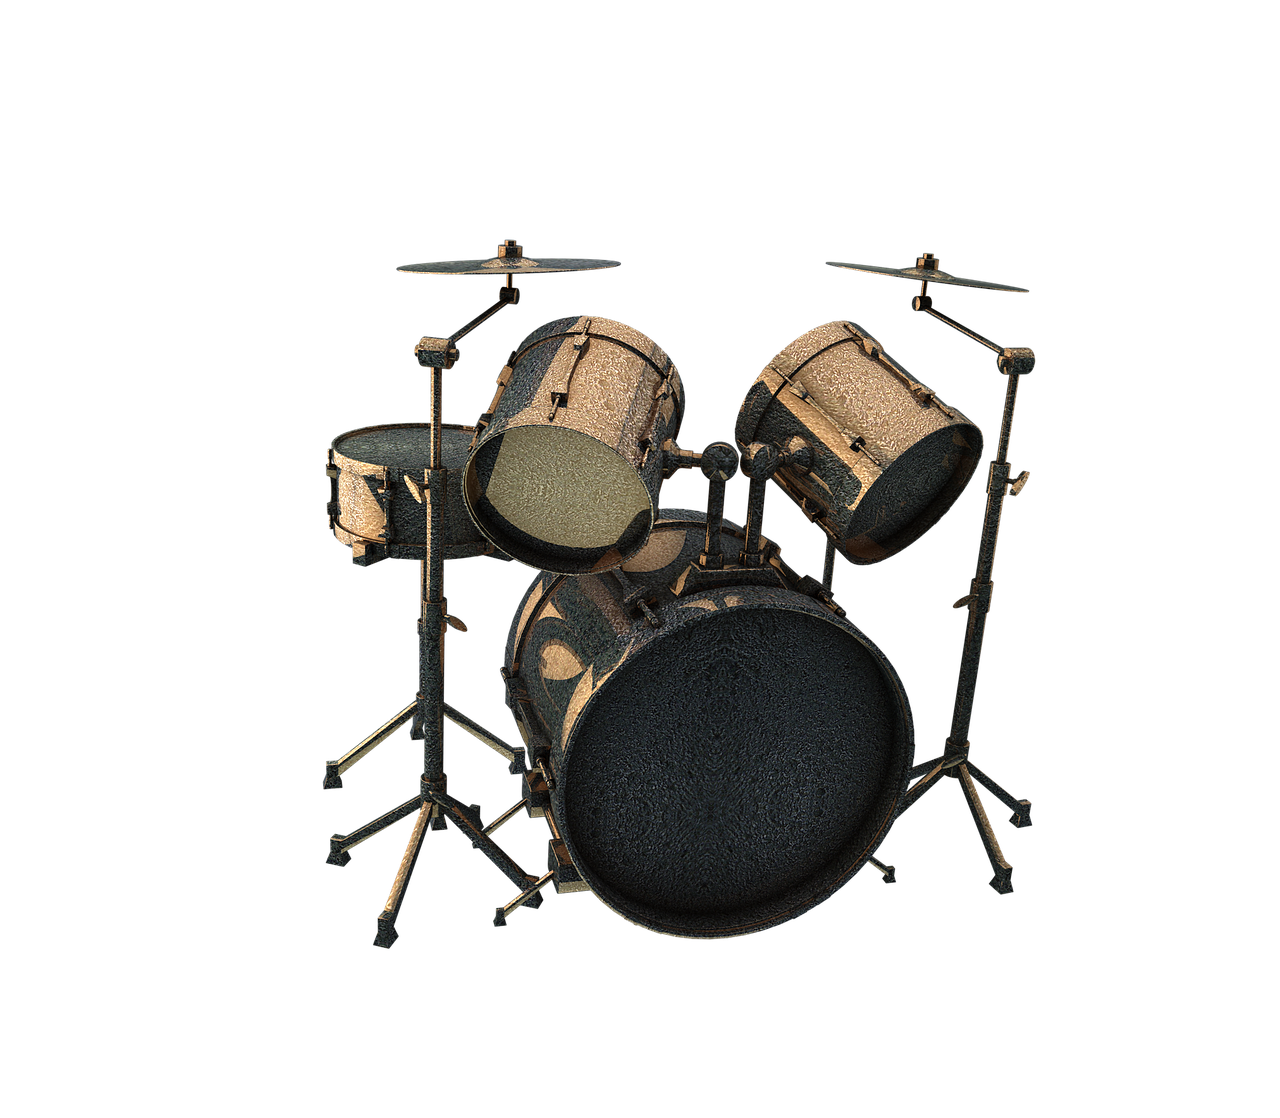 drums drummer instrument free photo